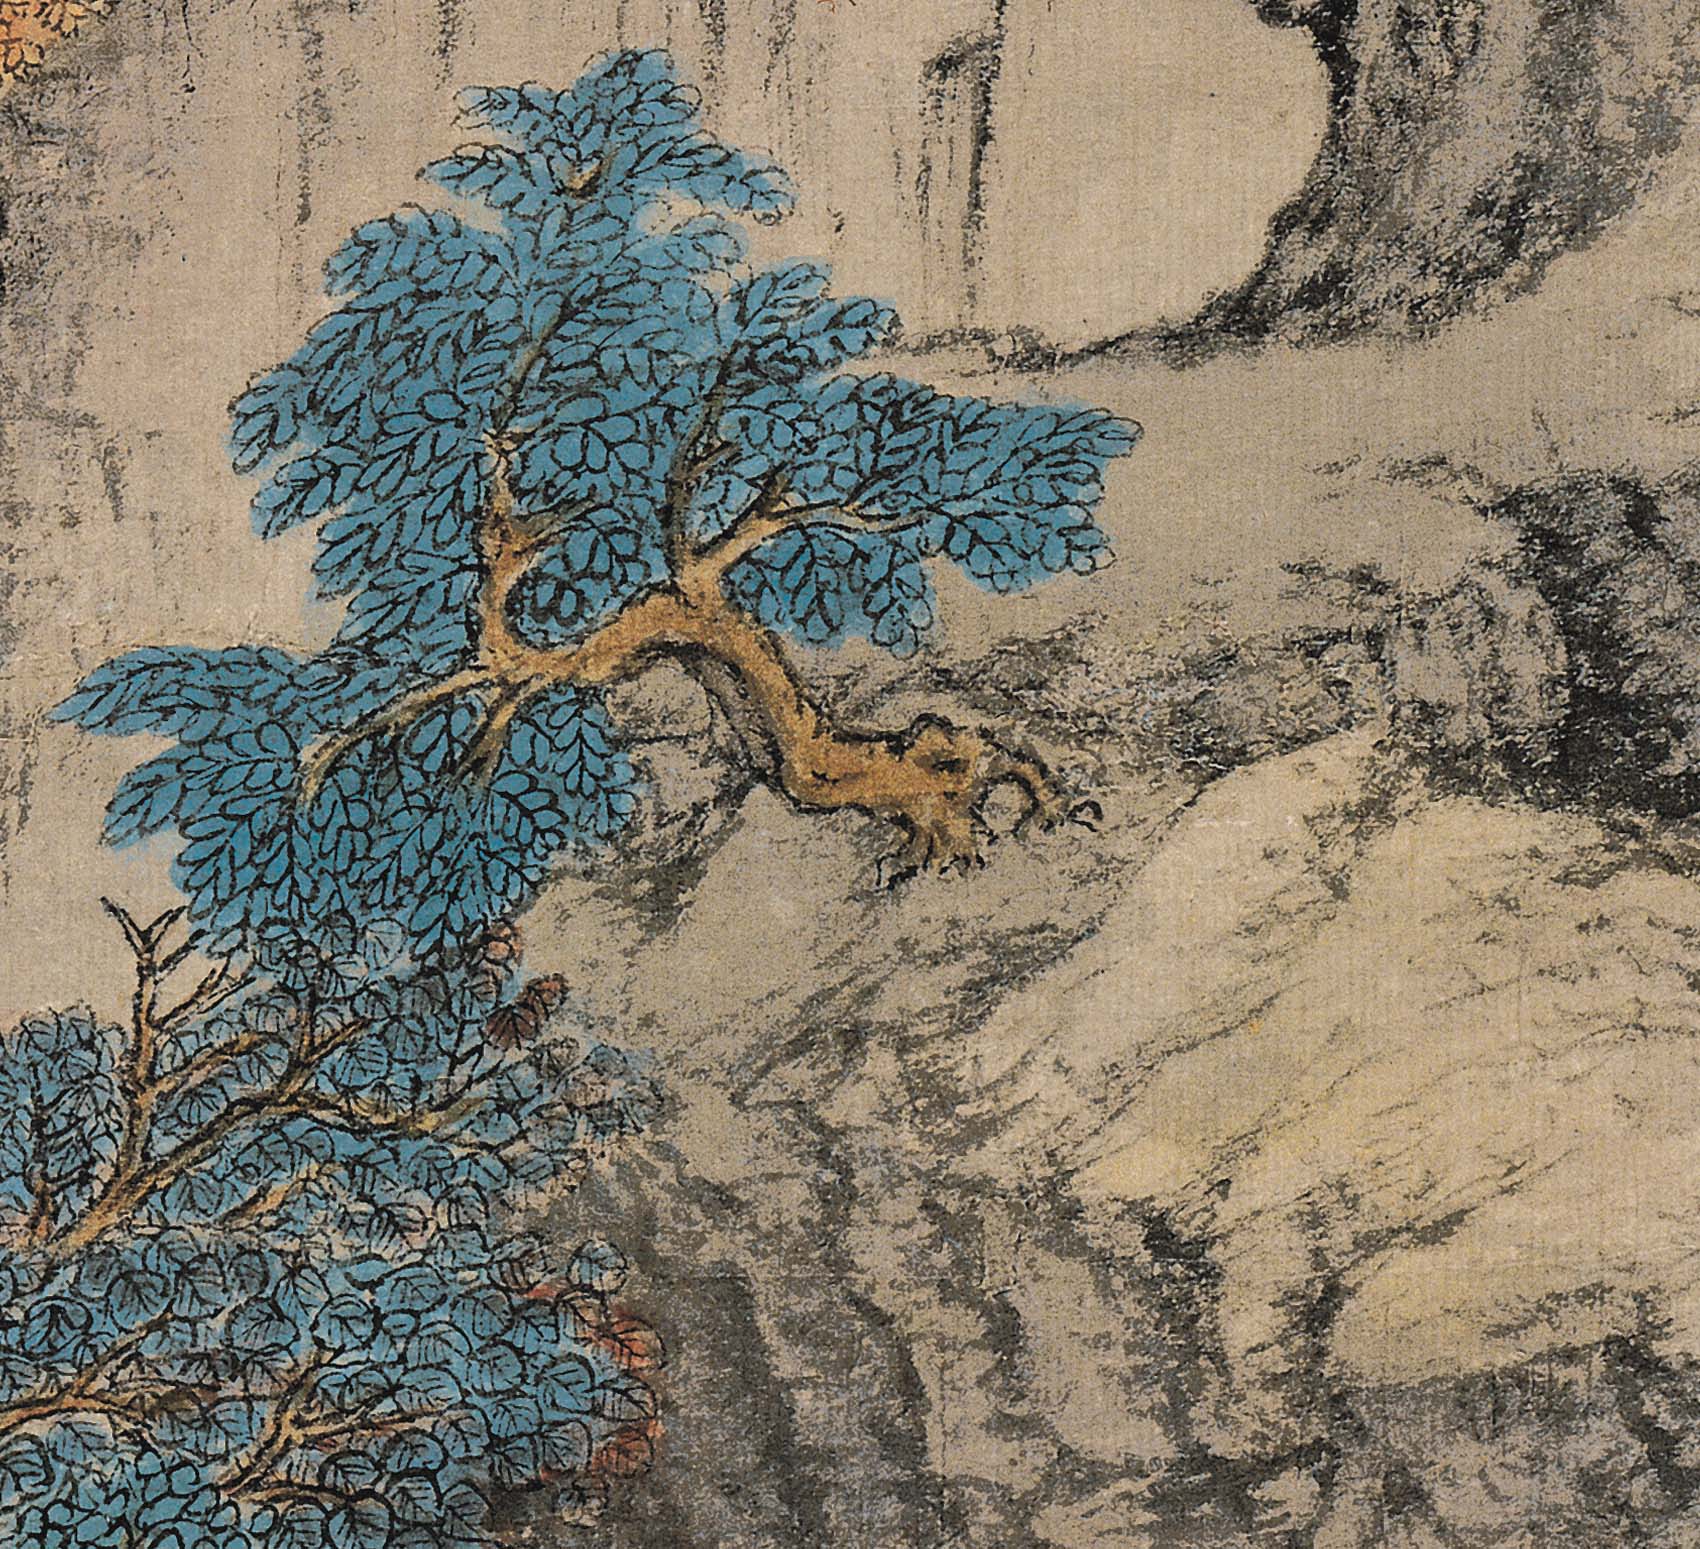 Chinese Antique Art Painting 元 王蒙 葛稚川移居图 Yuan Wang Meng Ge Zhi Chuan Yi Ju Tu